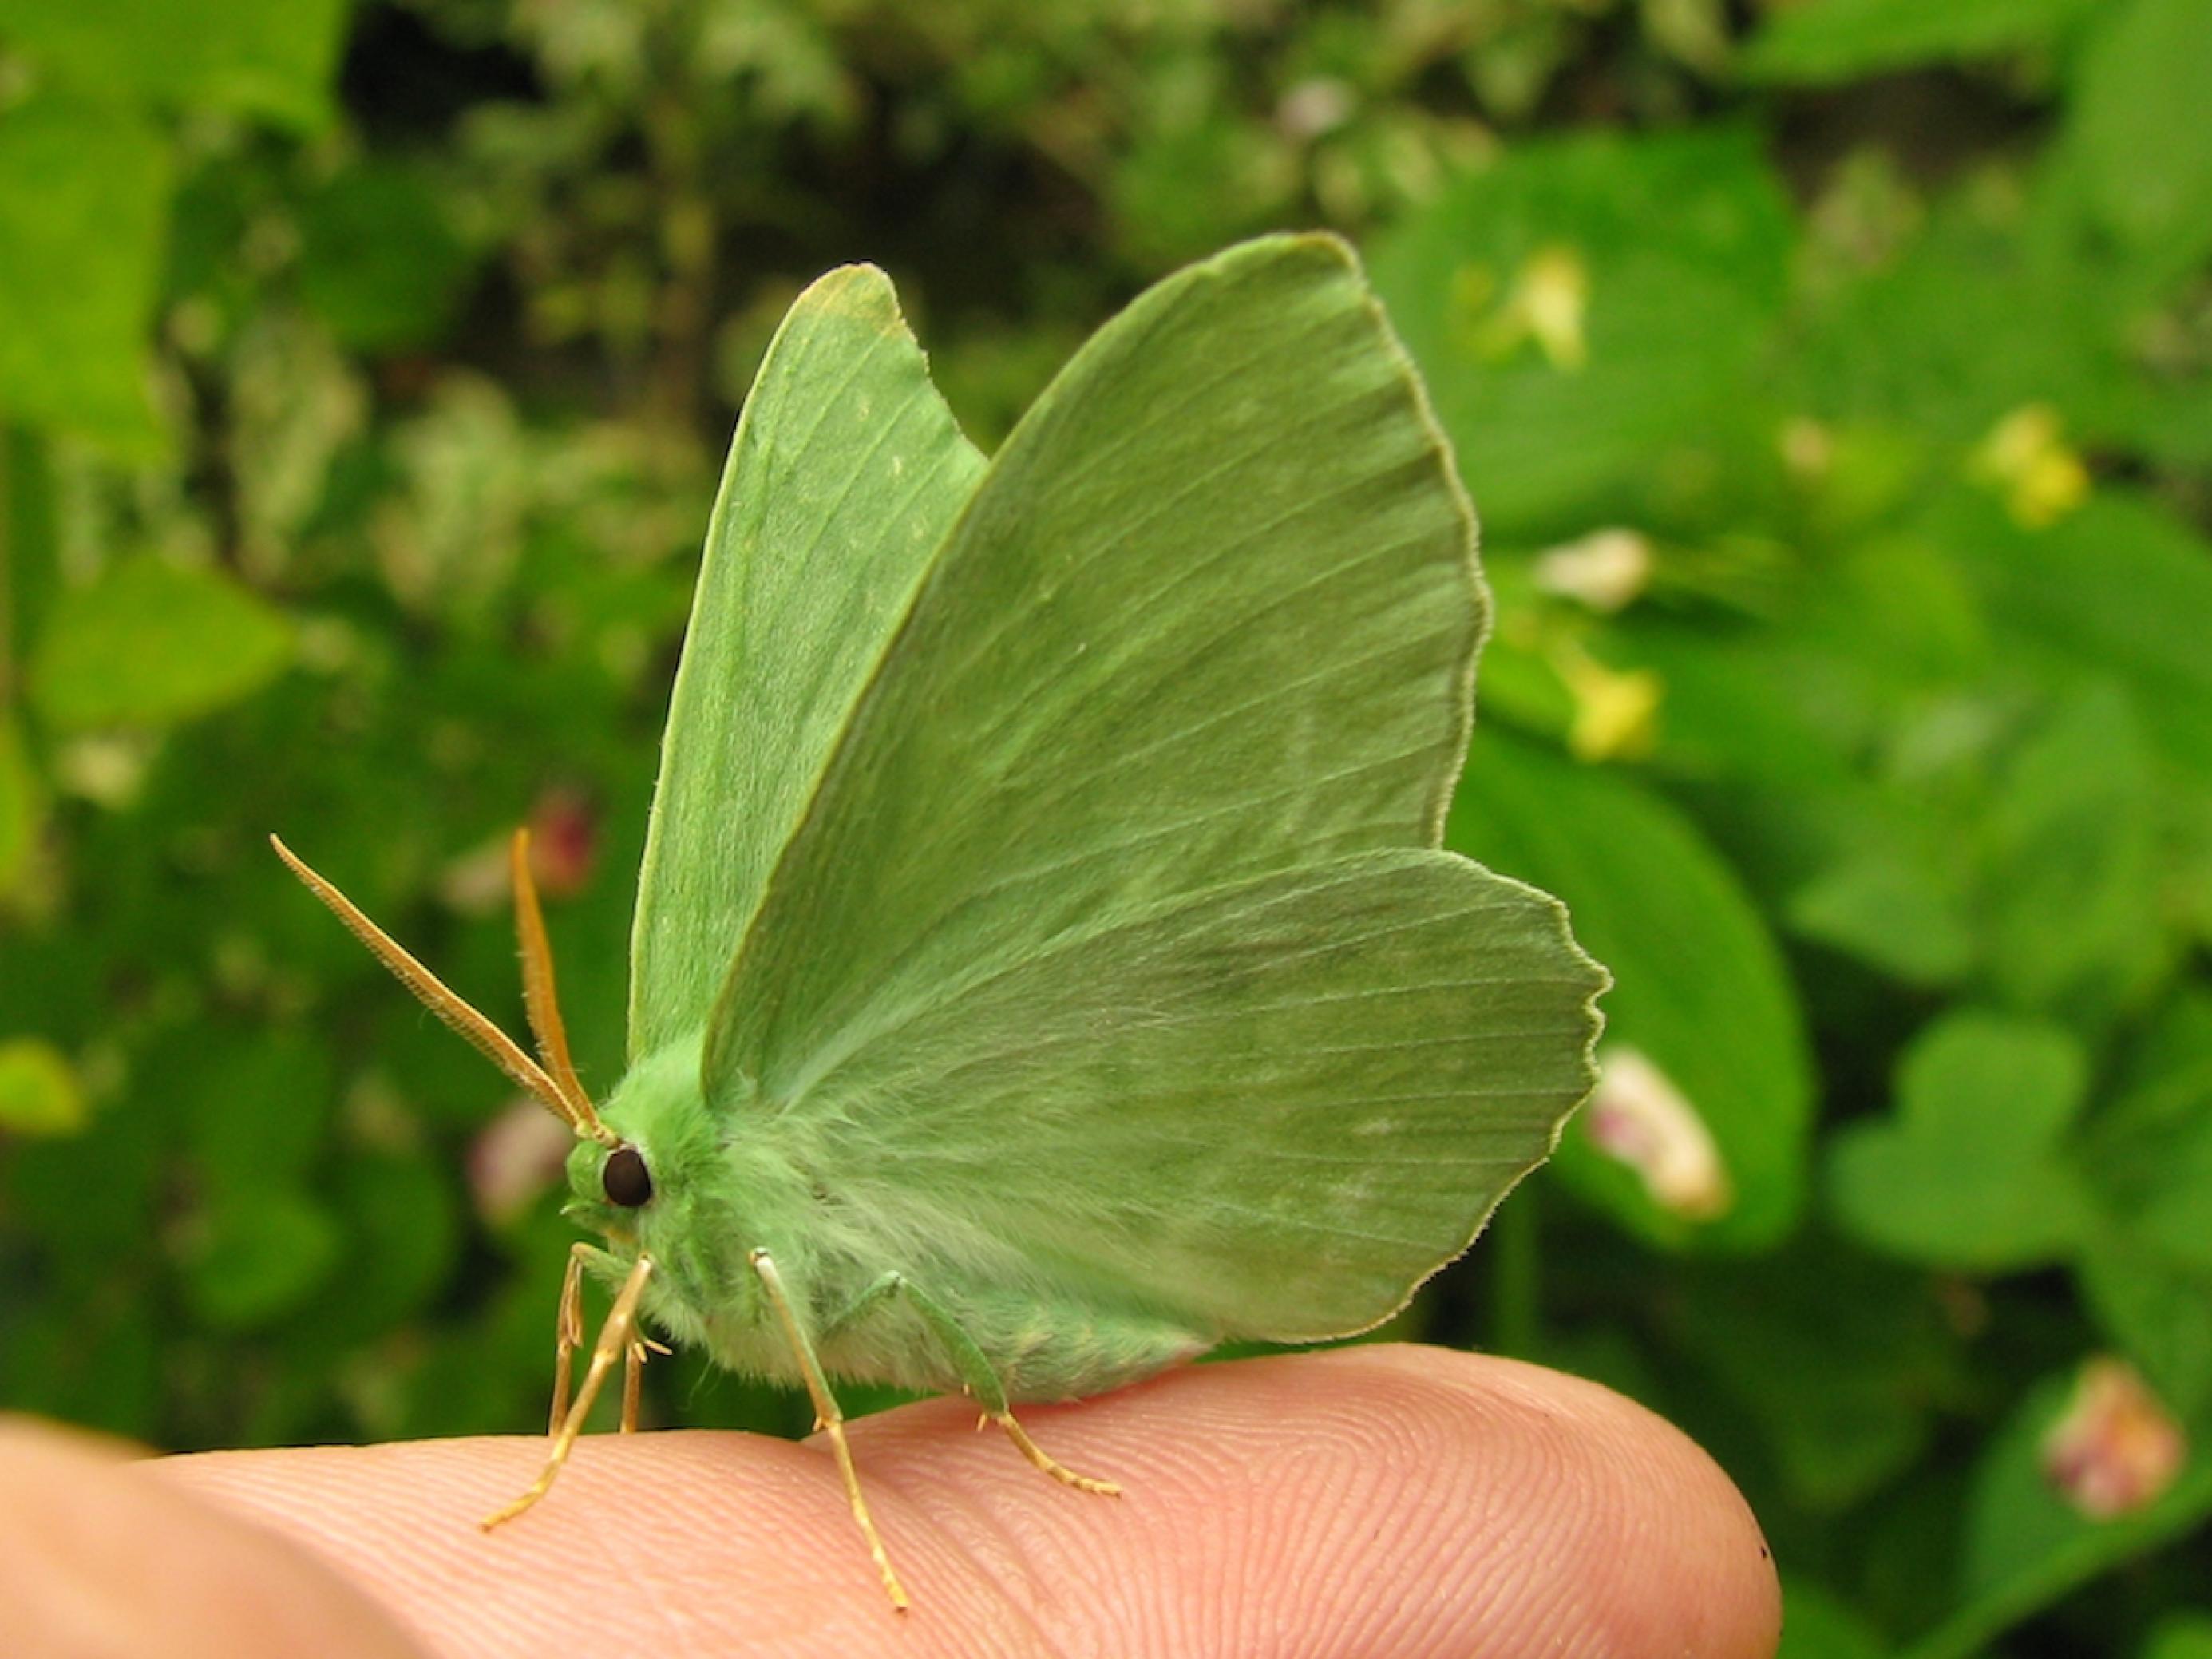 Ein Grünes Blatt, geometra papilionaria, sitzt auf einem Finger. Der Schmetterling ist hellgrün und sieht aus wie ein Blatt.